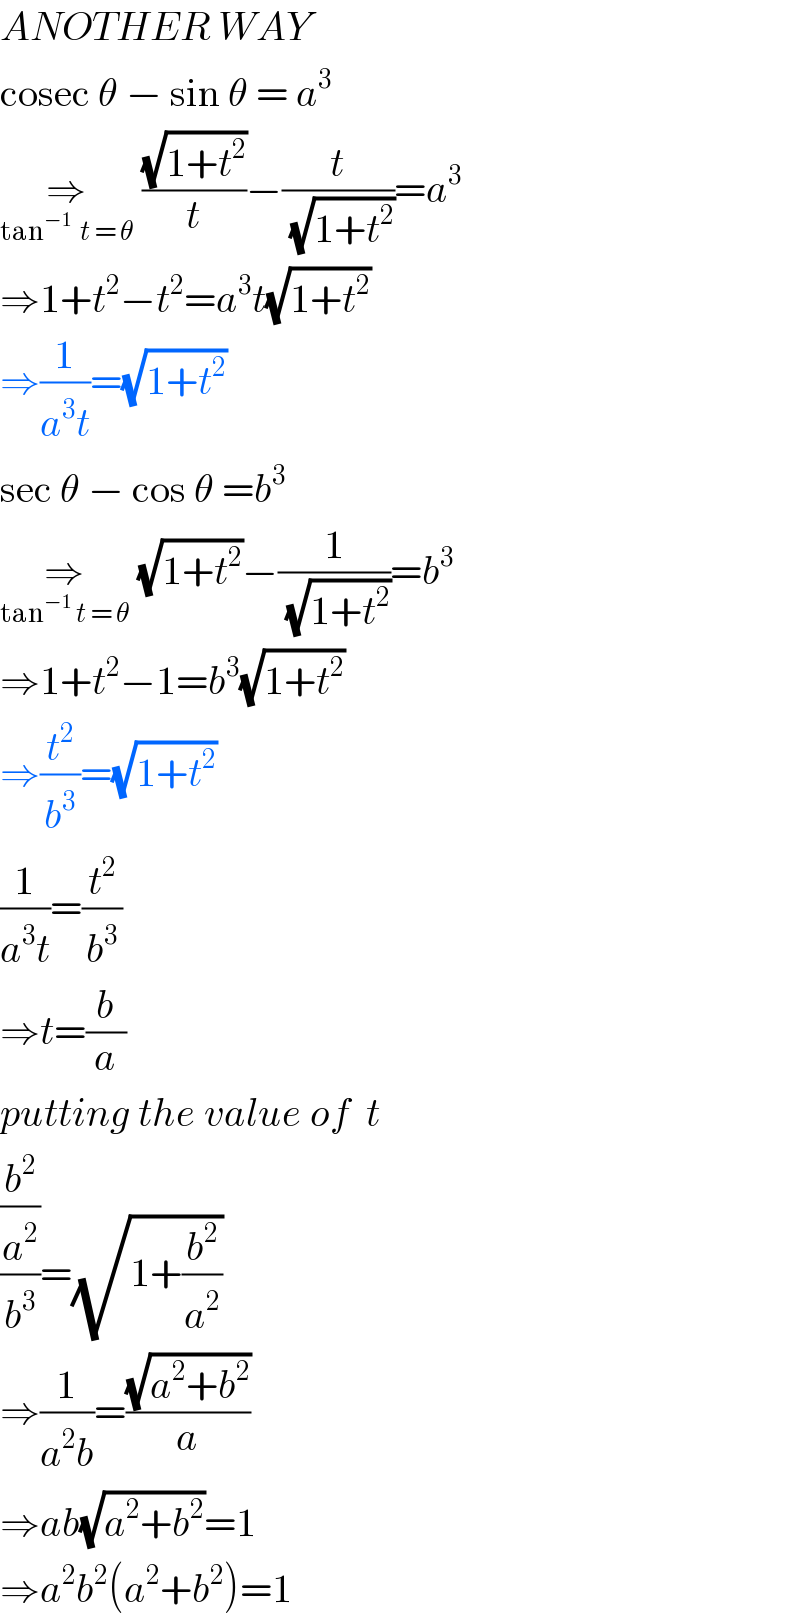 ANOTHER WAY  cosec θ − sin θ = a^3   ⇒_(tan^(−1)   t = θ)  ((√(1+t^2 ))/t)−(t/(√(1+t^2 )))=a^3   ⇒1+t^2 −t^2 =a^3 t(√(1+t^2 ))  ⇒(1/(a^3 t))=(√(1+t^2 ))  sec θ − cos θ =b^3   ⇒_(tan^(−1)  t = θ)  (√(1+t^2 ))−(1/(√(1+t^2 )))=b^3   ⇒1+t^2 −1=b^3 (√(1+t^2 ))  ⇒(t^2 /b^3 )=(√(1+t^2 ))  (1/(a^3 t))=(t^2 /b^3 )  ⇒t=(b/a)  putting the value of  t  ((b^2 /a^2 )/b^3 )=(√(1+(b^2 /a^2 )))  ⇒(1/(a^2 b))=((√(a^2 +b^2 ))/a)  ⇒ab(√(a^2 +b^2 ))=1  ⇒a^2 b^2 (a^2 +b^2 )=1  